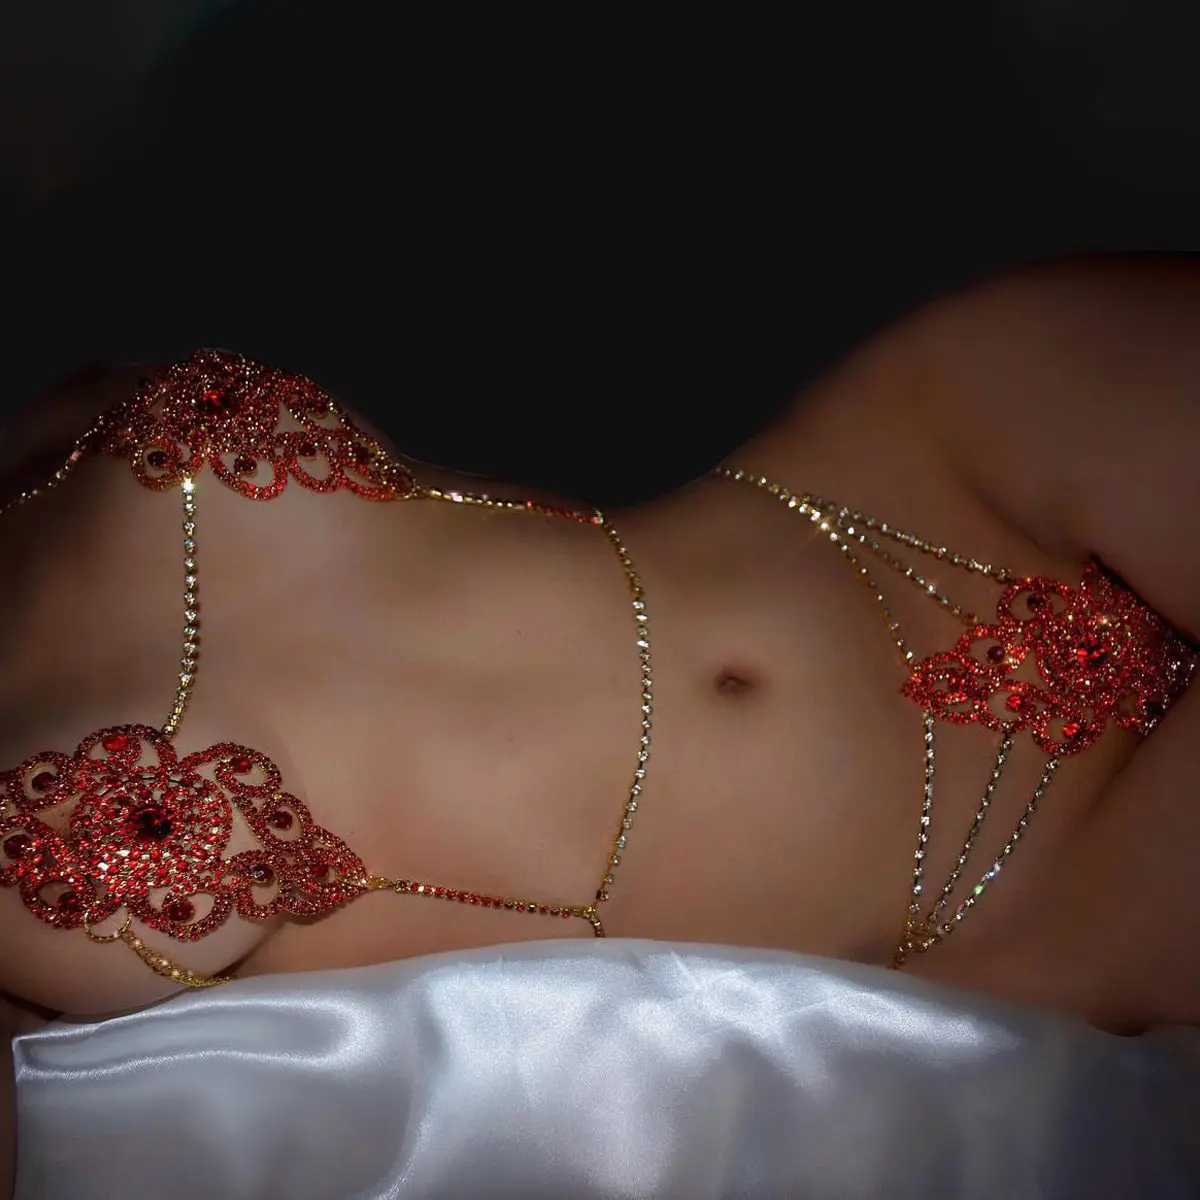 Cadena Mujeres fino estupendo ropa interior atractiva de la hora de dormir Oro Borgoña lencería de malla transparente 